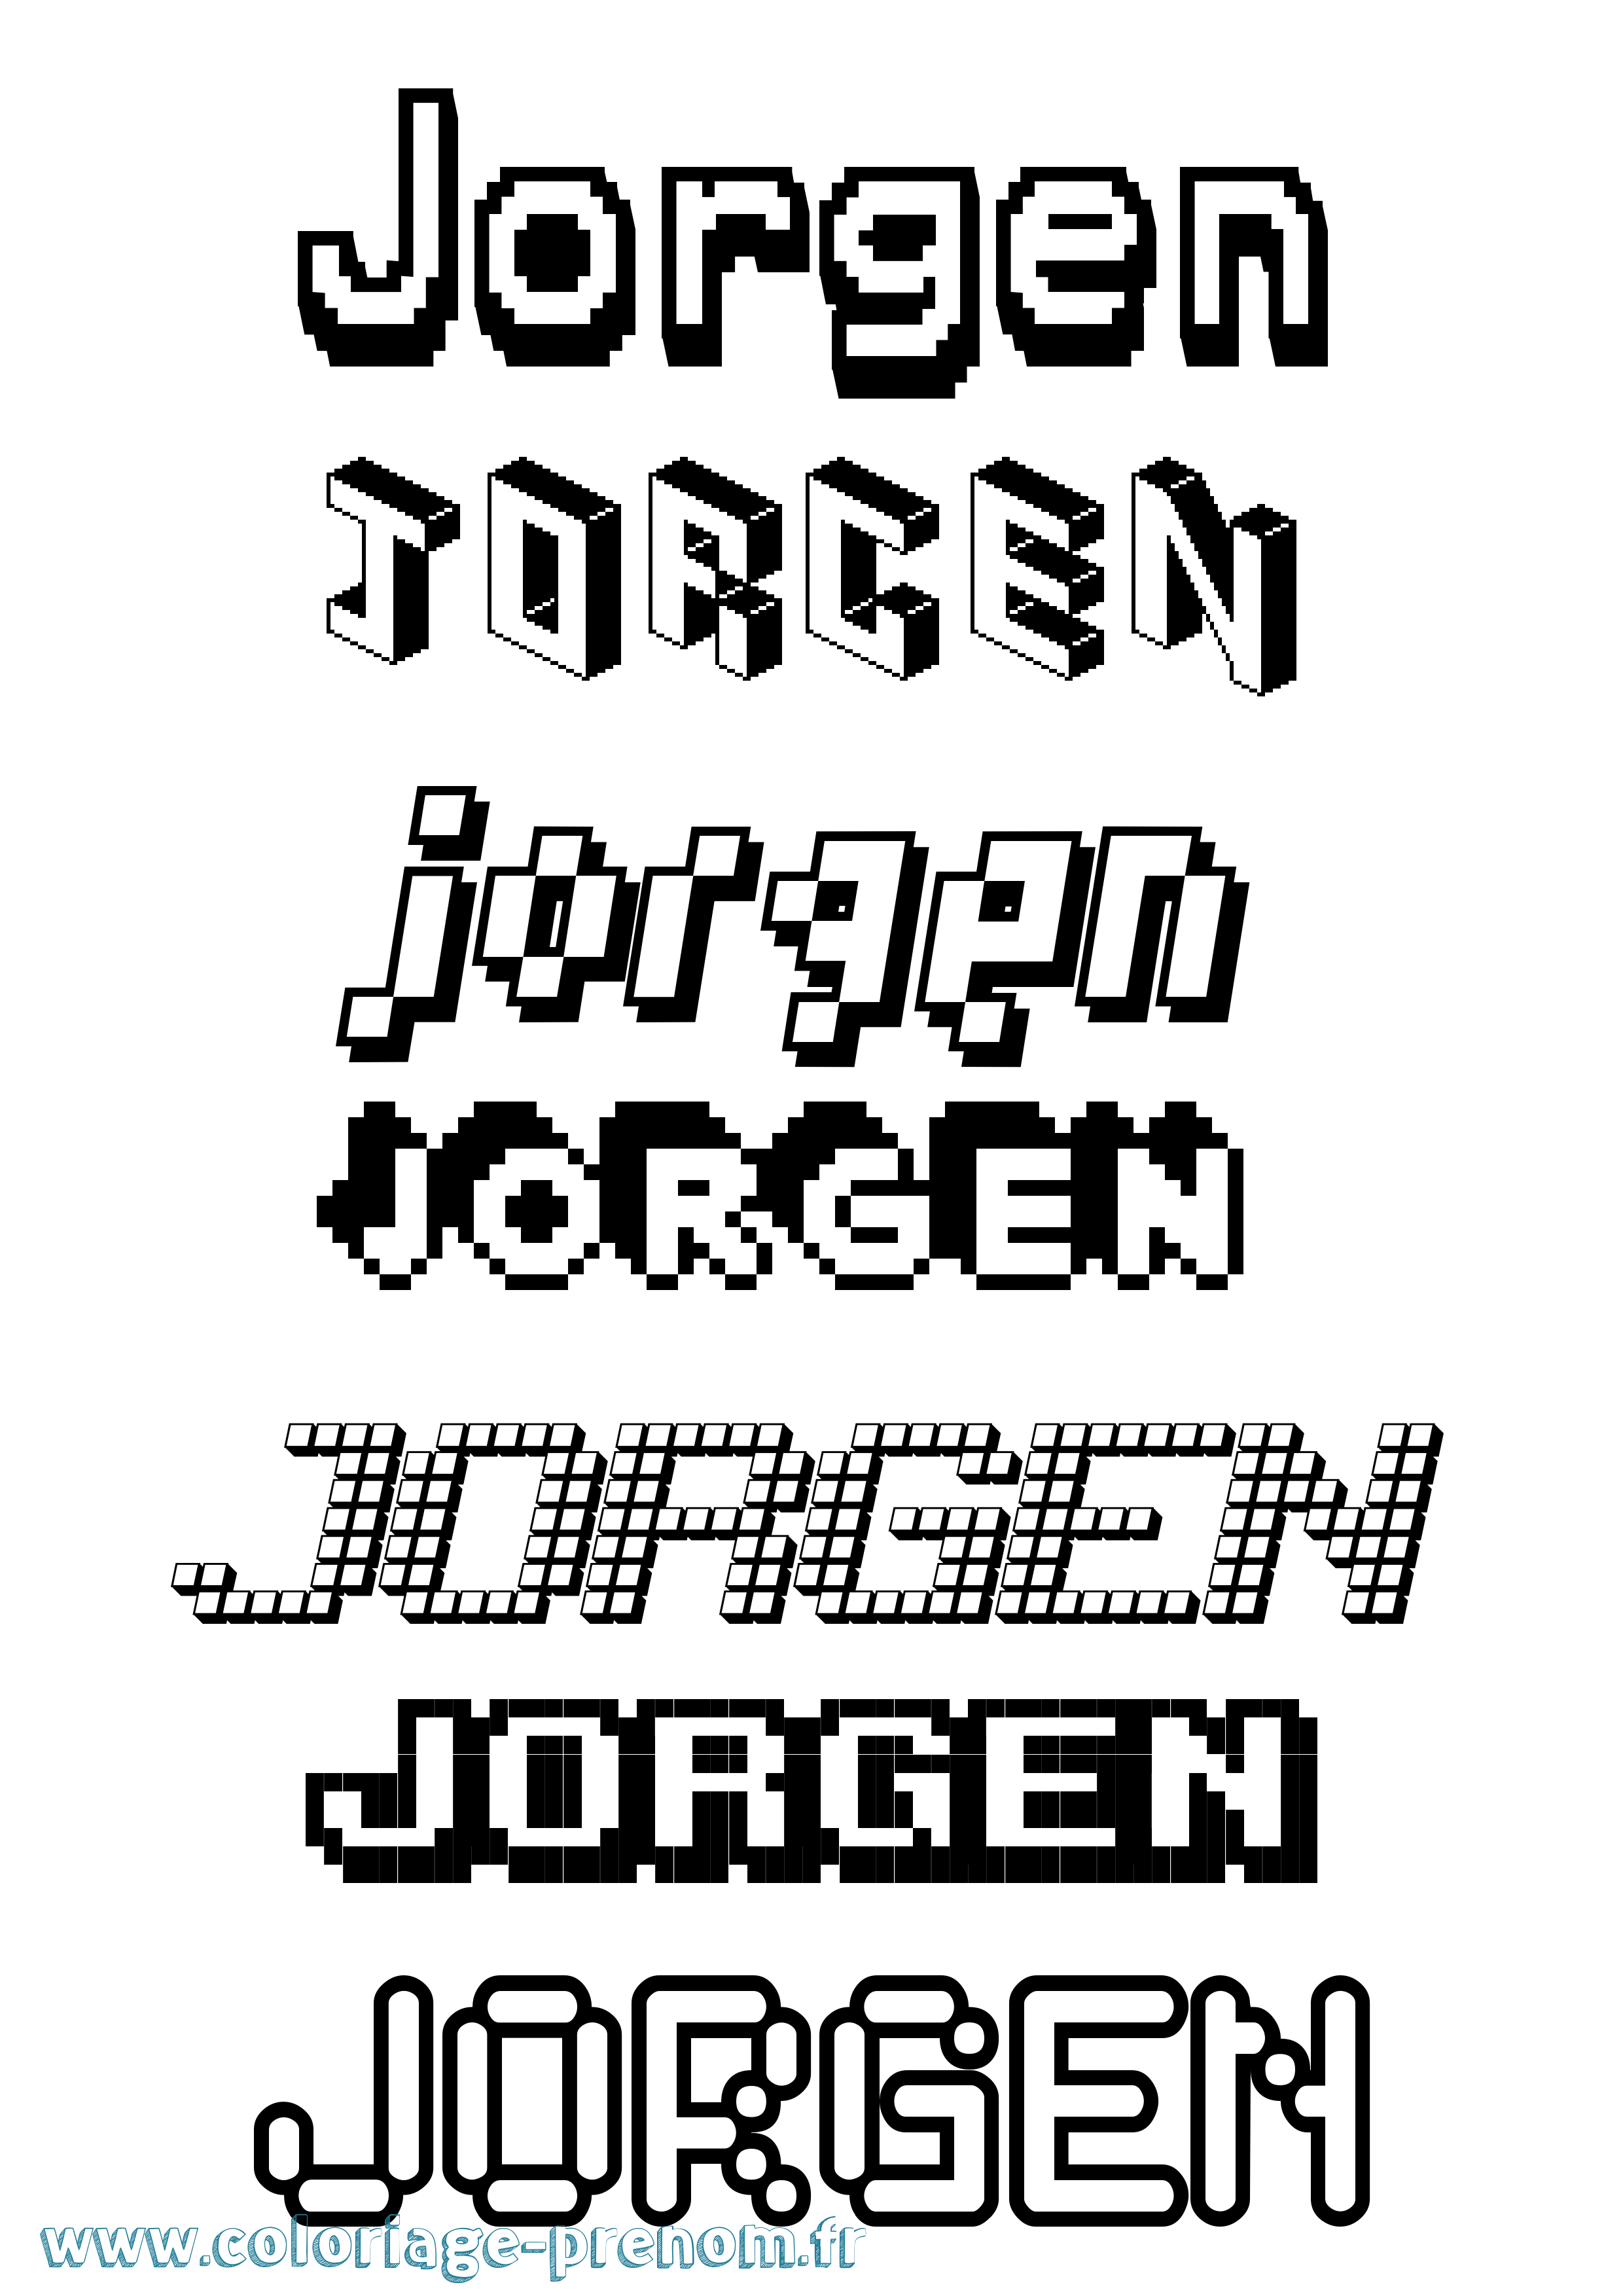 Coloriage prénom Jorgen Pixel